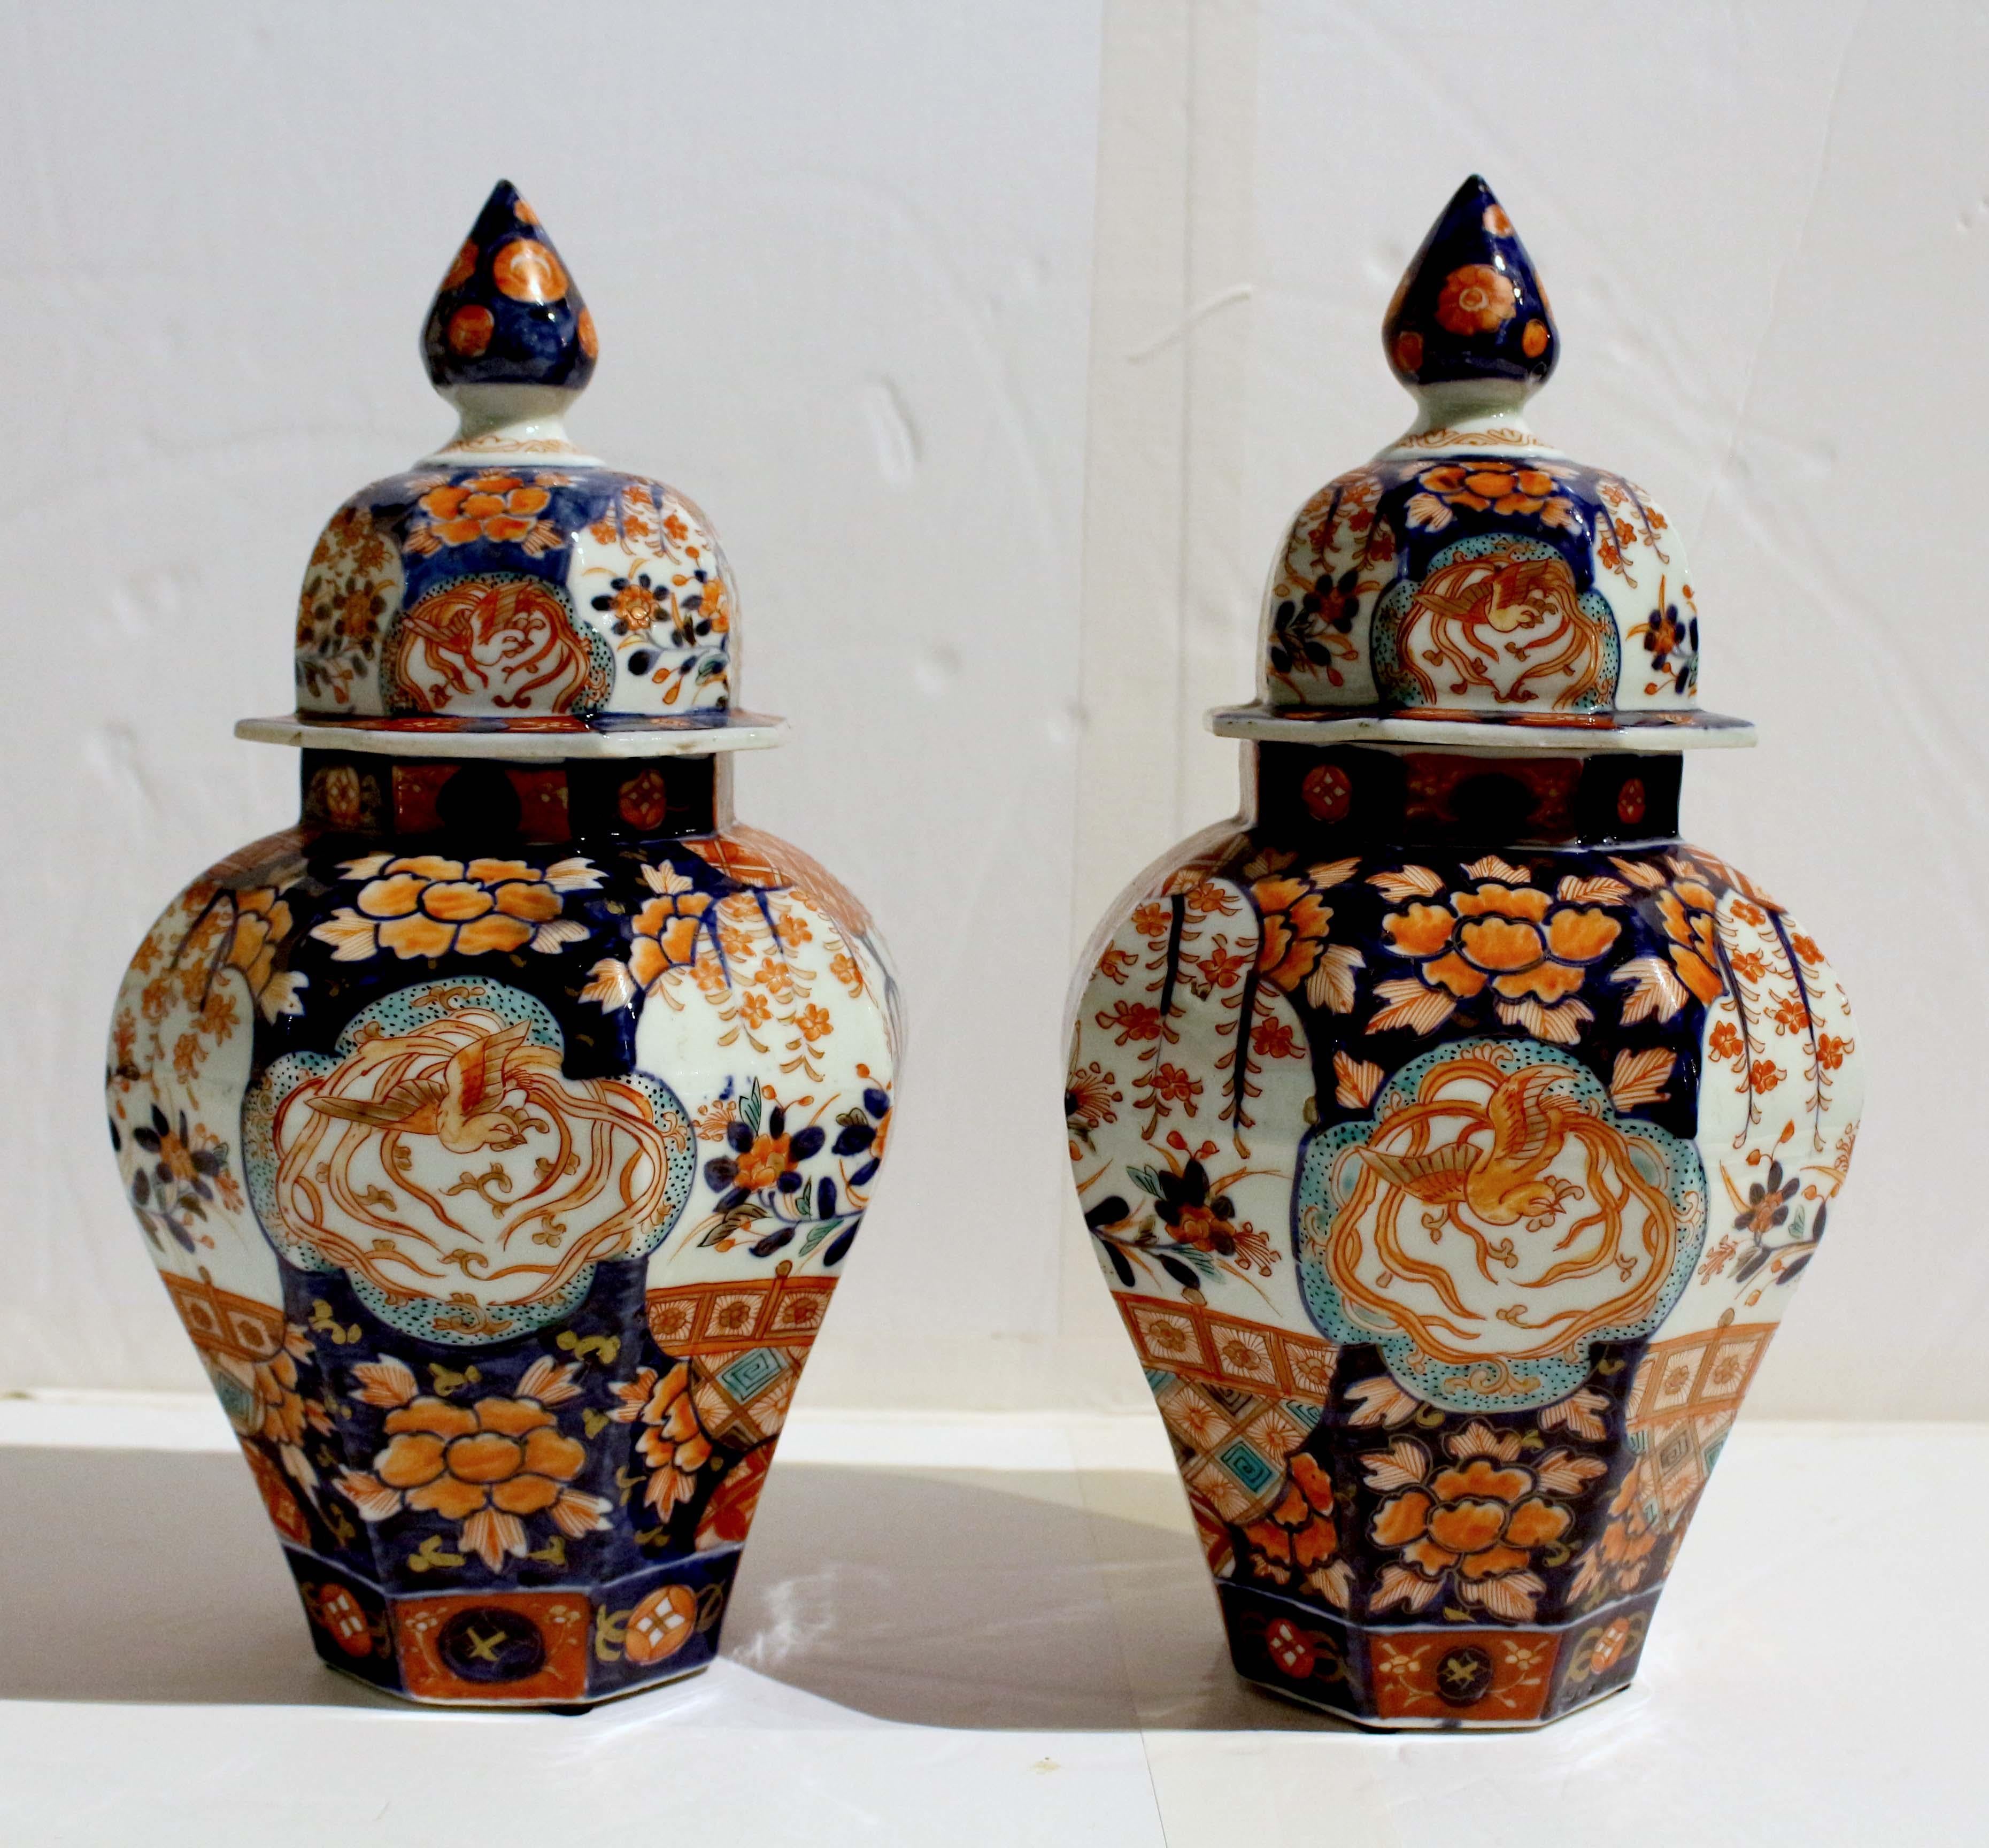 Circa 1860-80 paire de jarres couvertes Imari, japonaises. Les couvercles sont surmontés d'un fleuron, décoré d'oiseaux et de fleurs de phénix. Les jarres sont décorées de grands vases de fleurs sous des arbres en fleurs, sur fond de motifs